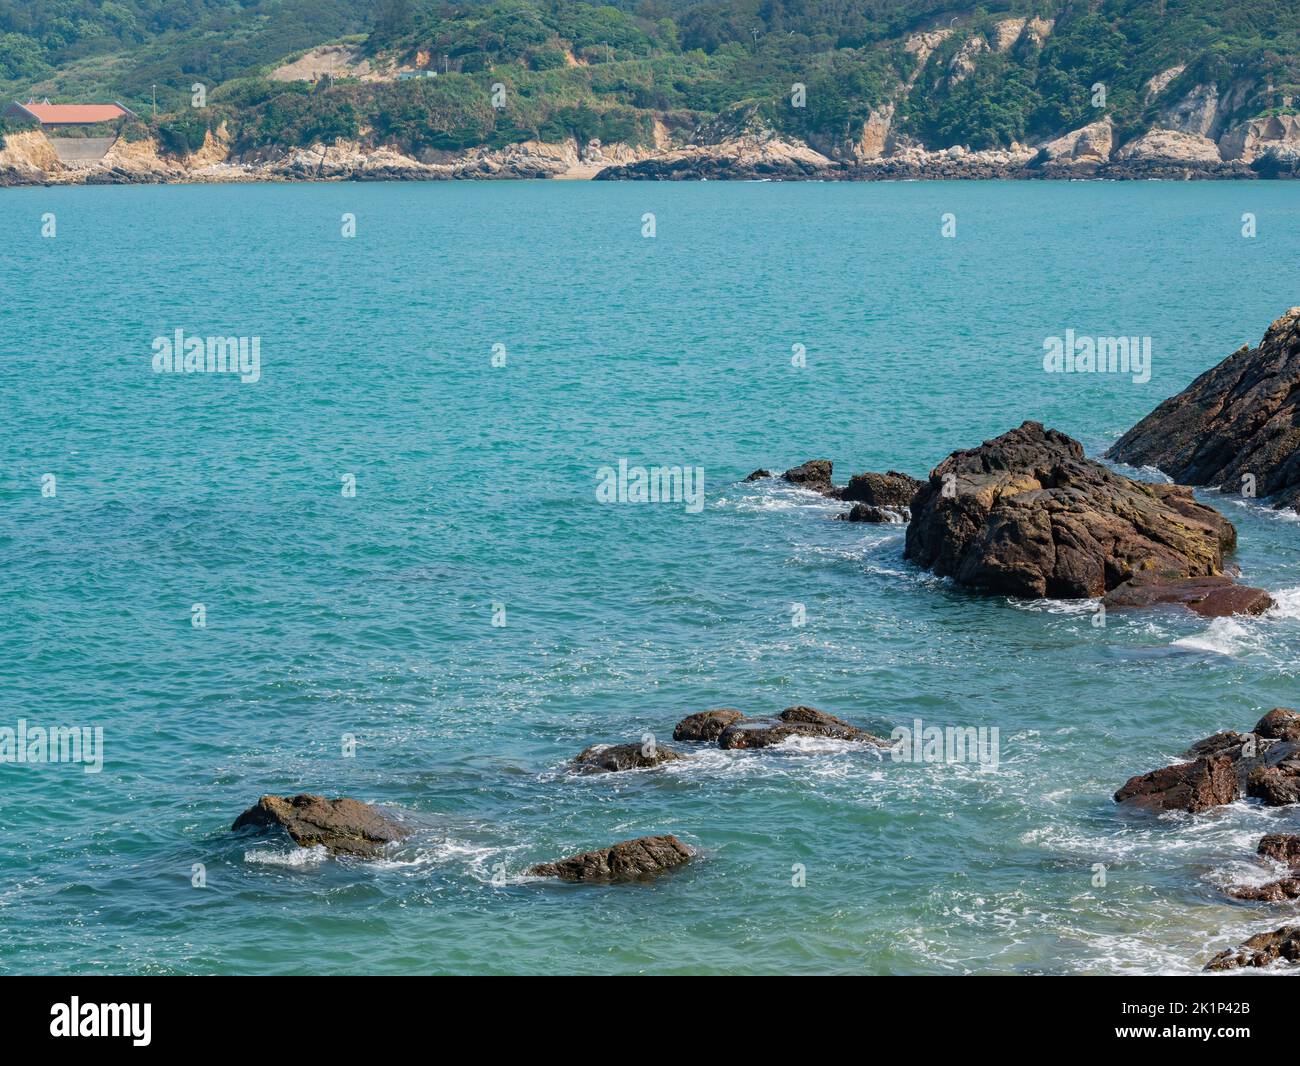 Sunny view of landscape of the Nangan Township shore at Matsu, Taiwan Stock Photo